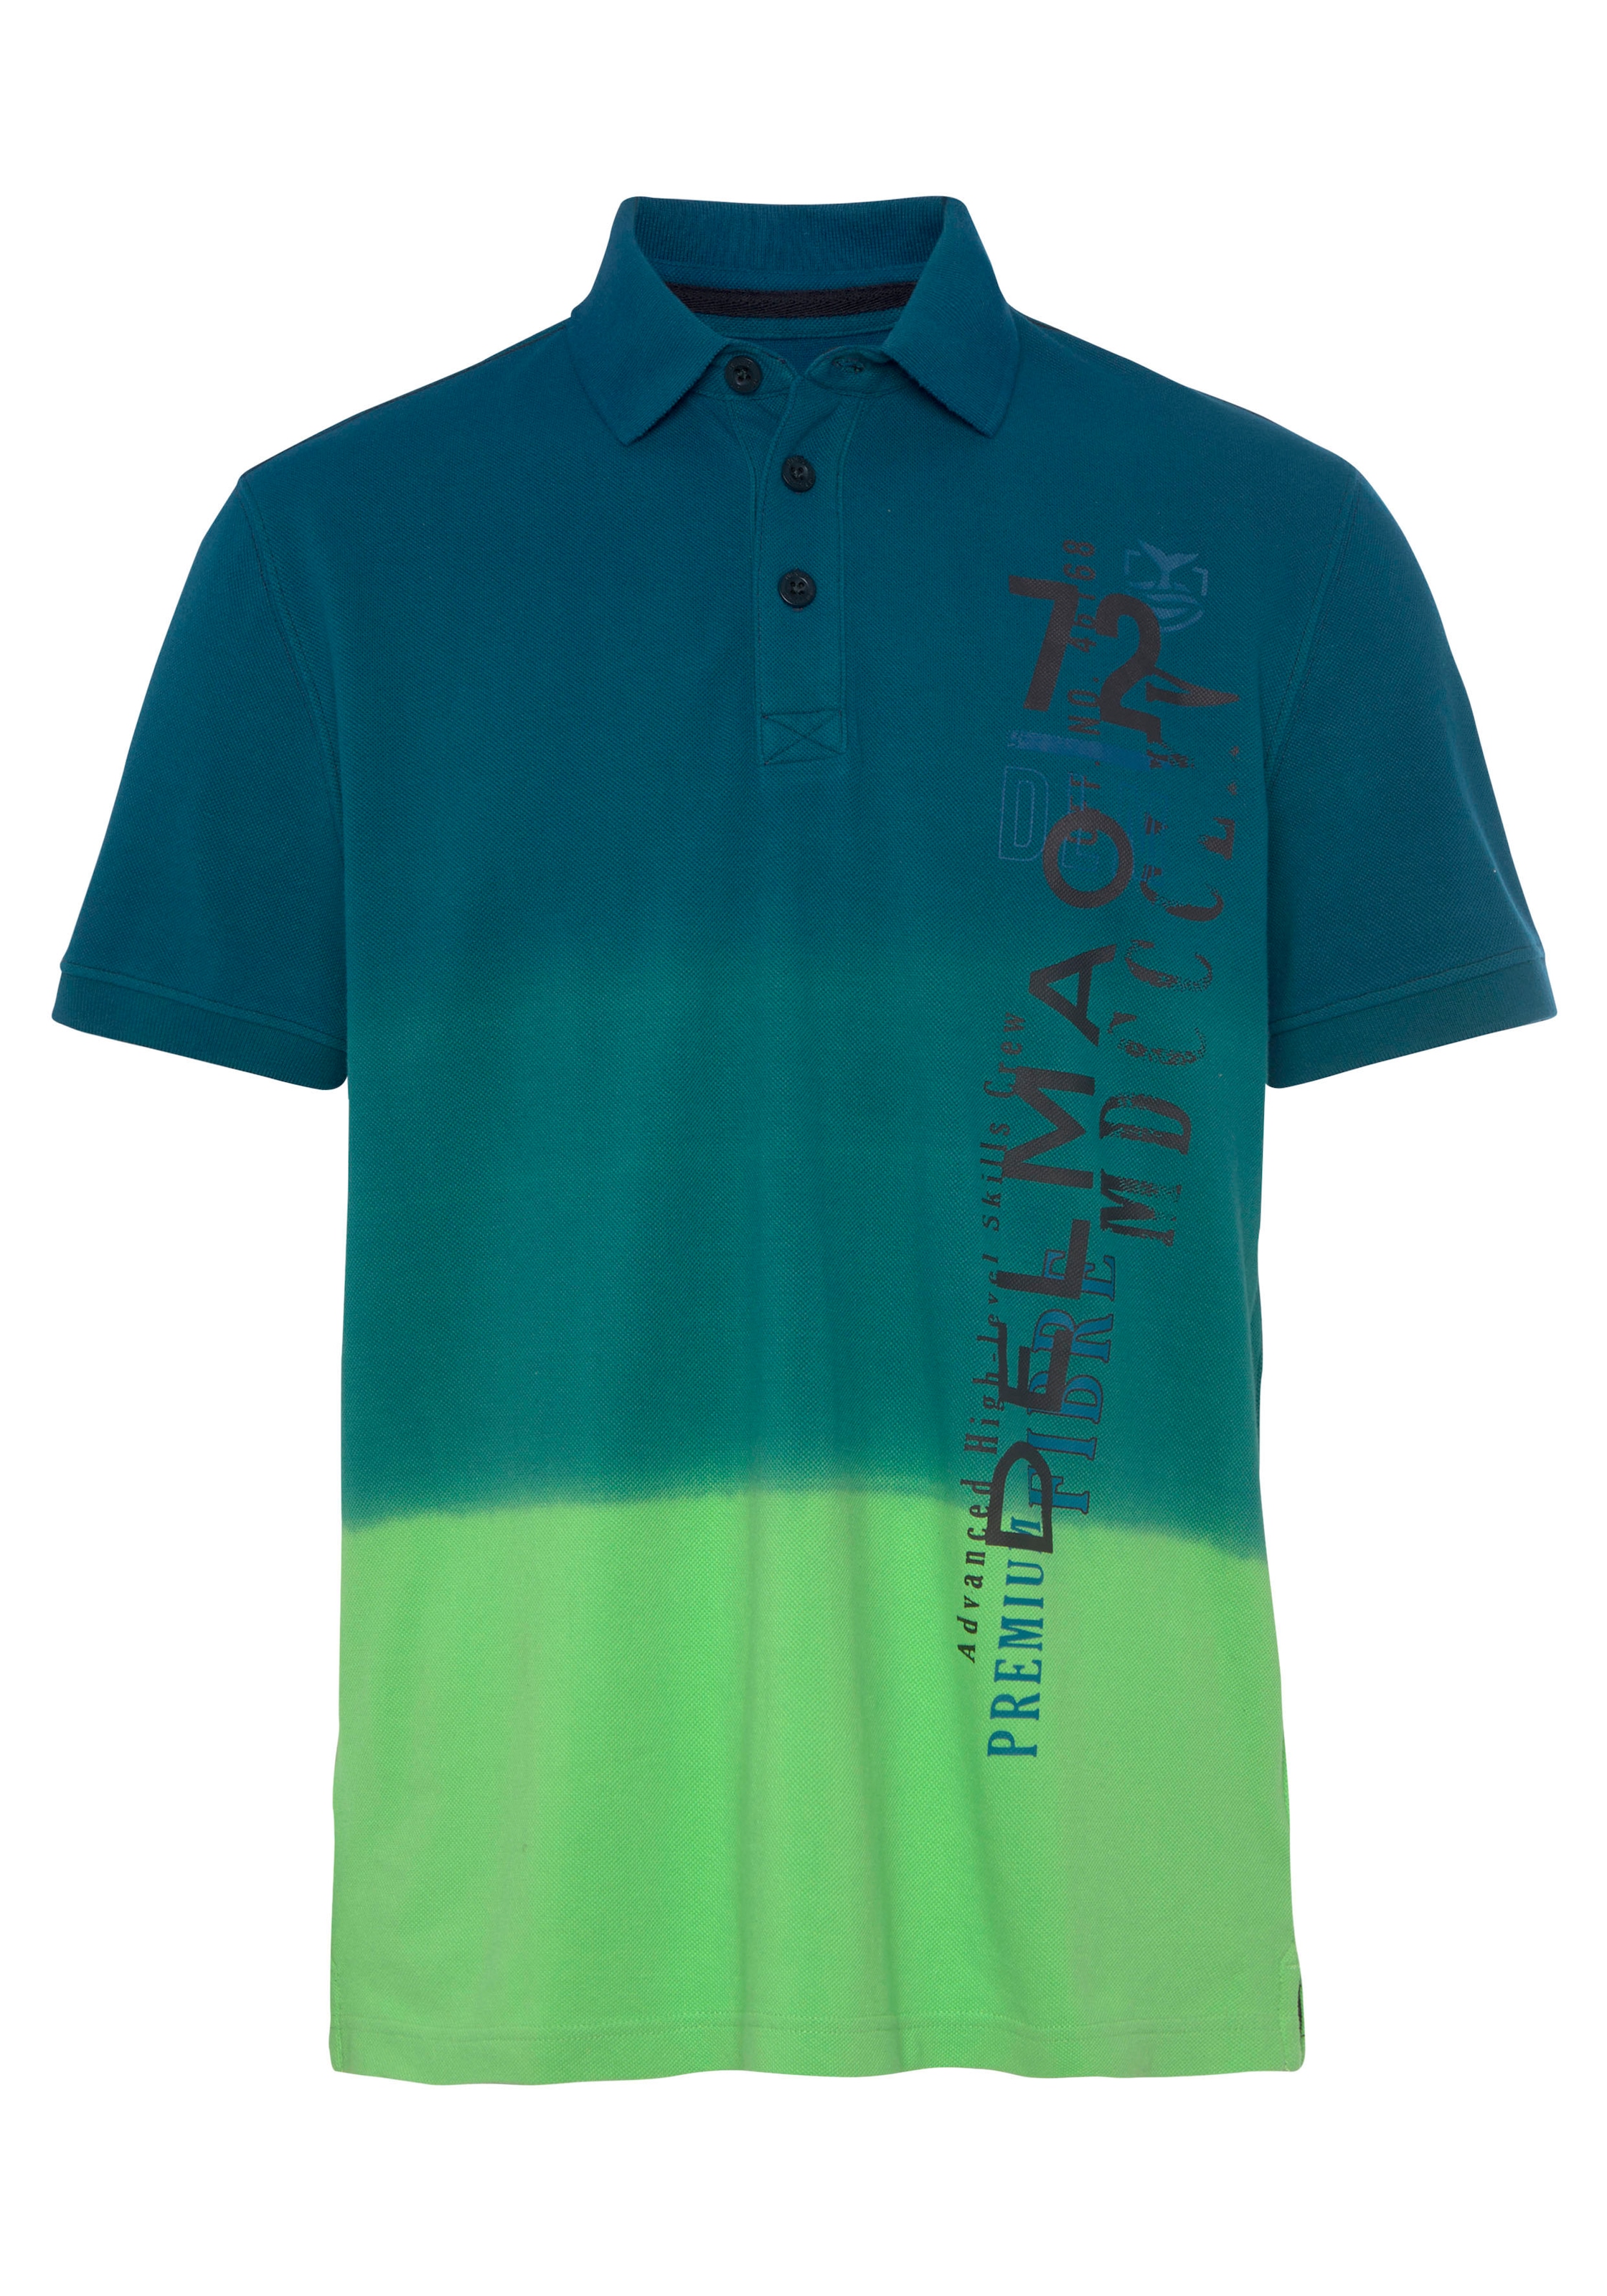 DELMAO Poloshirt, mit modischem Farbverlauf und Print- NEUE MARKE!